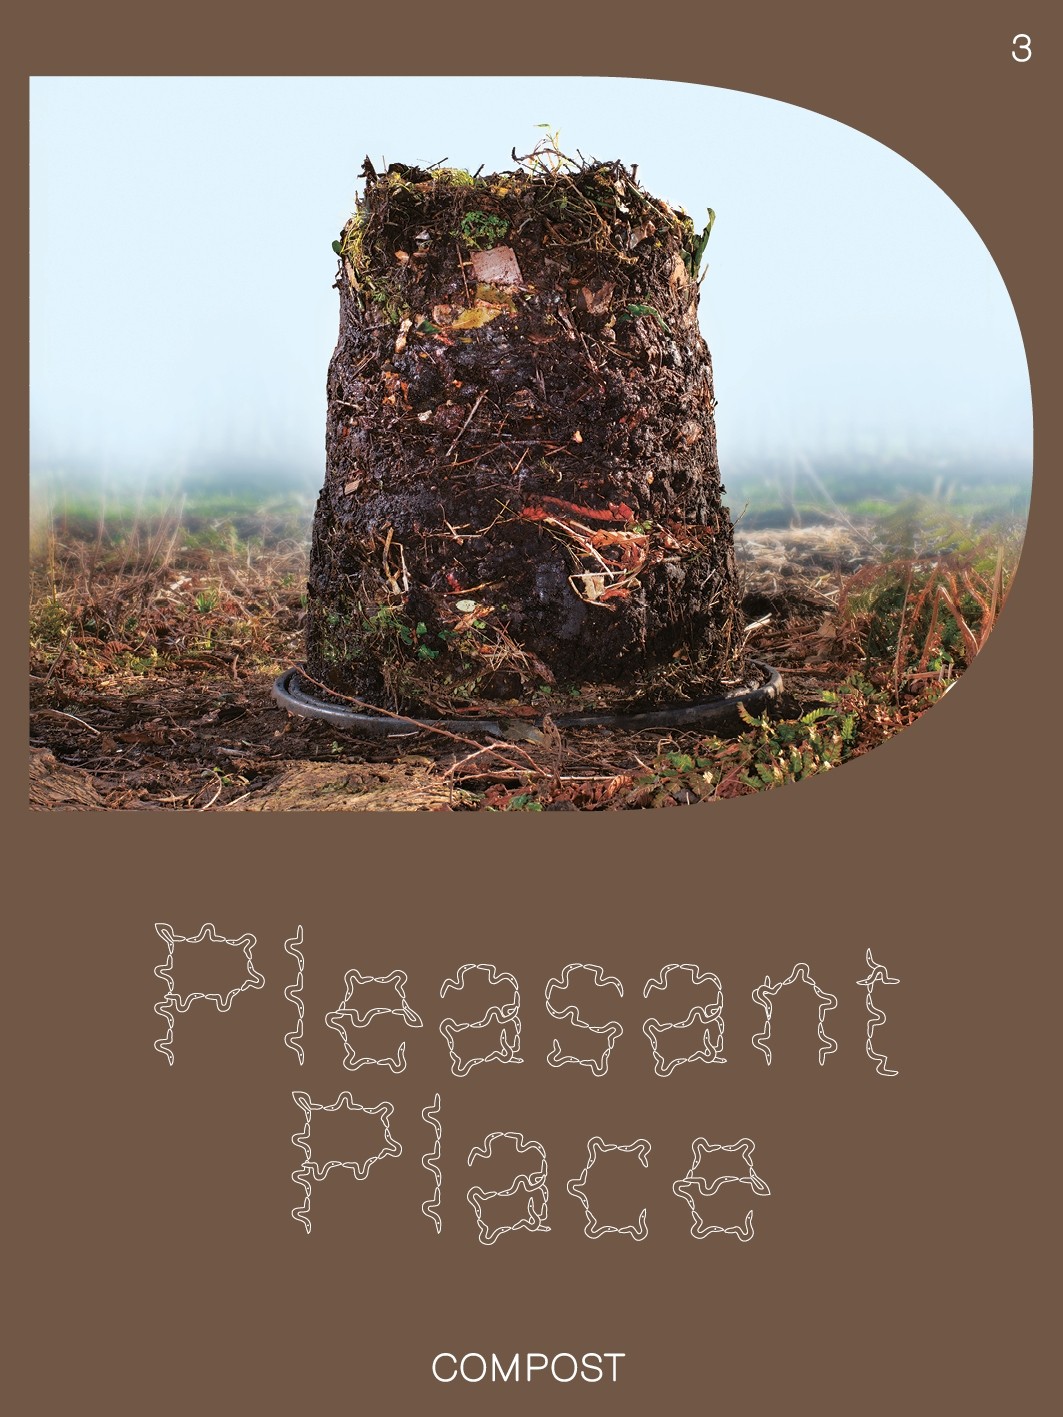 Pleasant Place 3. Compost